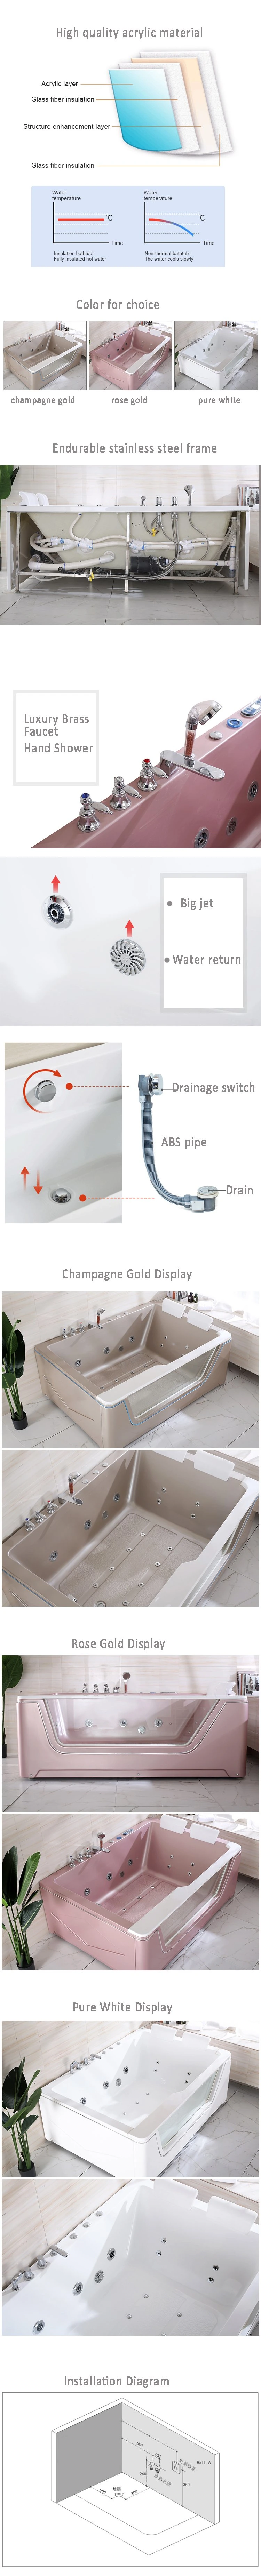 Popular Luxury Whirlpool Bathtub for SPA with Pillow Hot Sale Bathtub Transparenr Mini Bar Bathtub